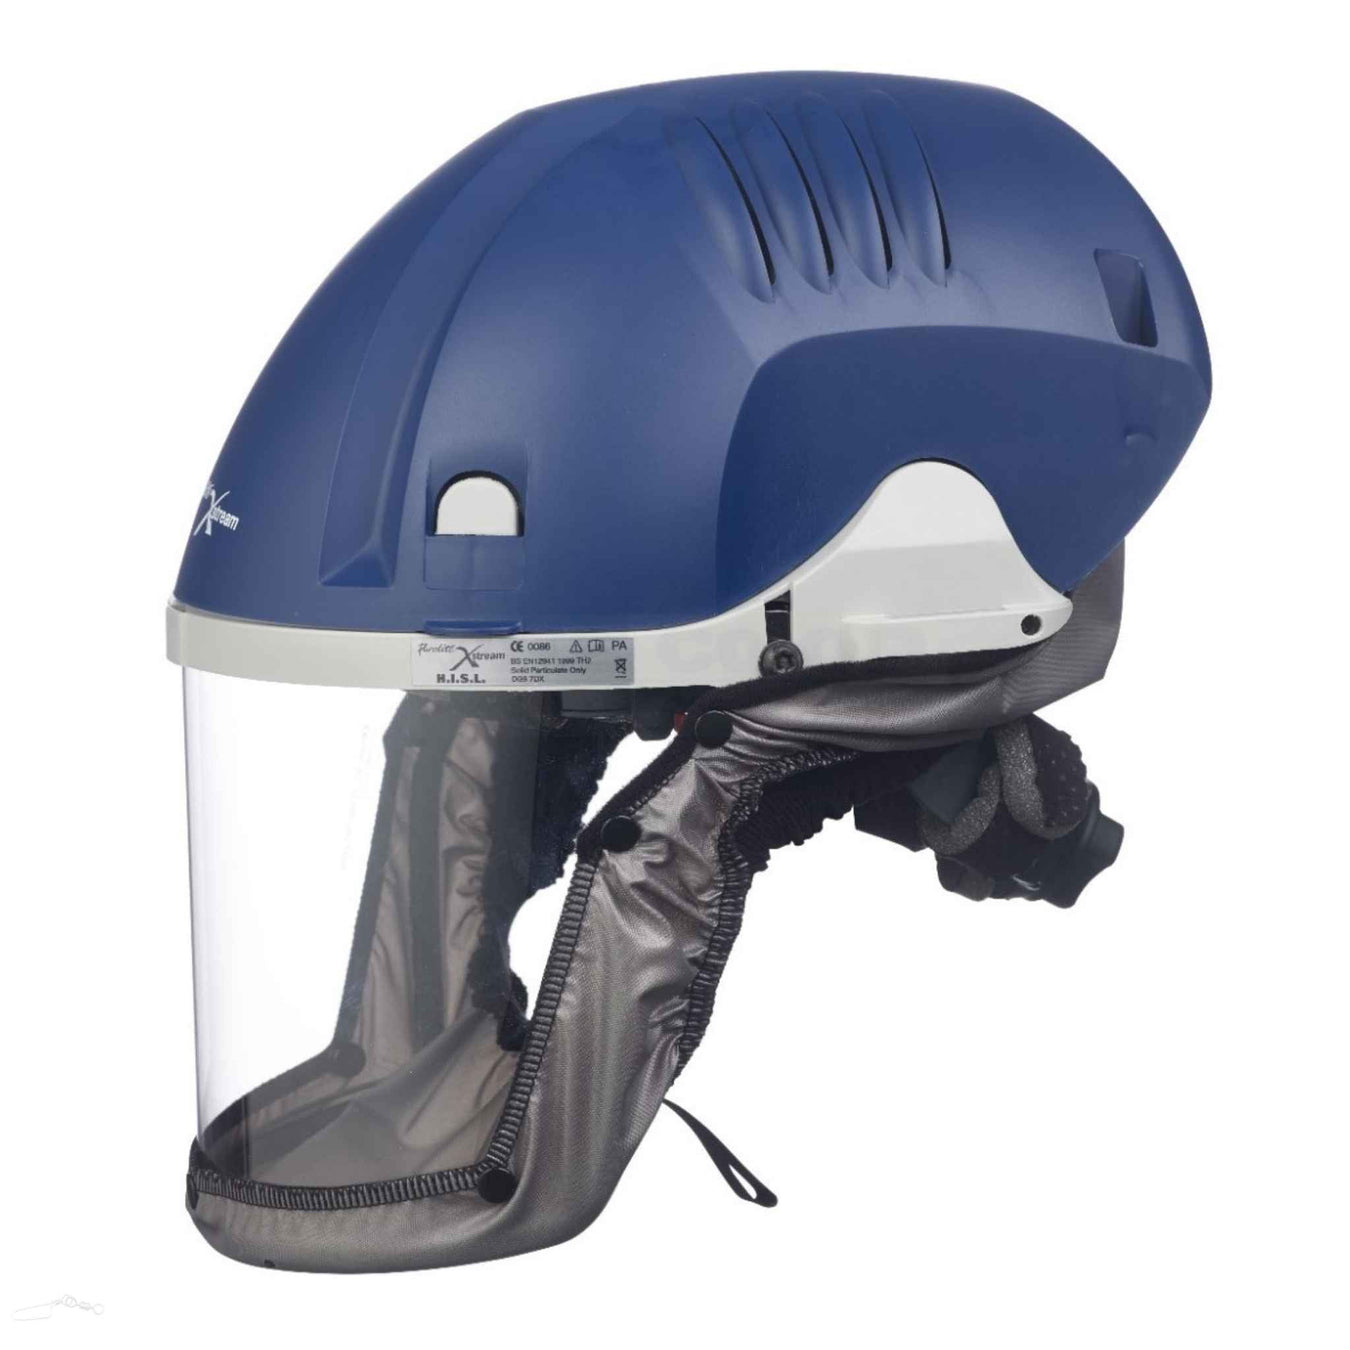 Purelite Xstream helmet